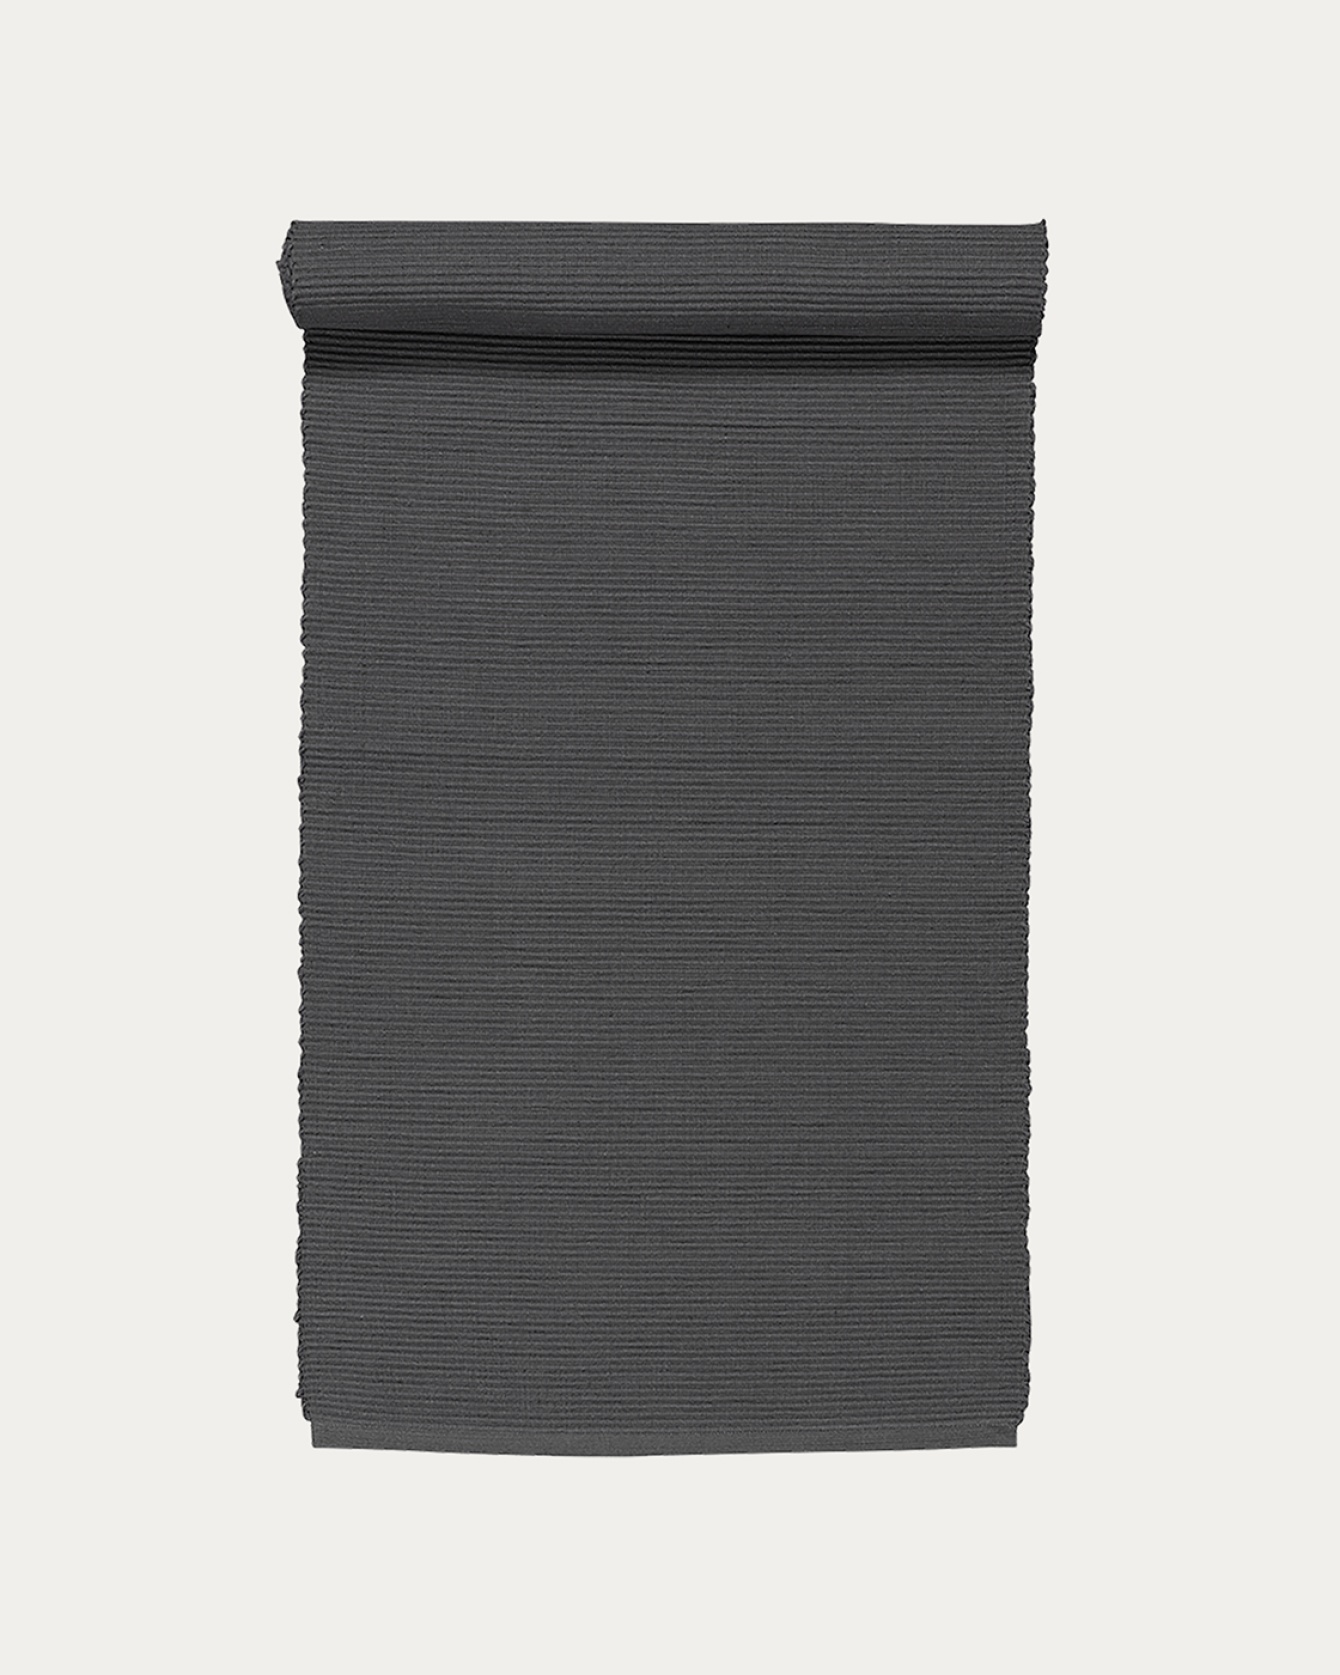 Produktbild granitgrå UNI löpare av mjuk bomull i ribbad kvalité från LINUM DESIGN. Storlek 45x150 cm.